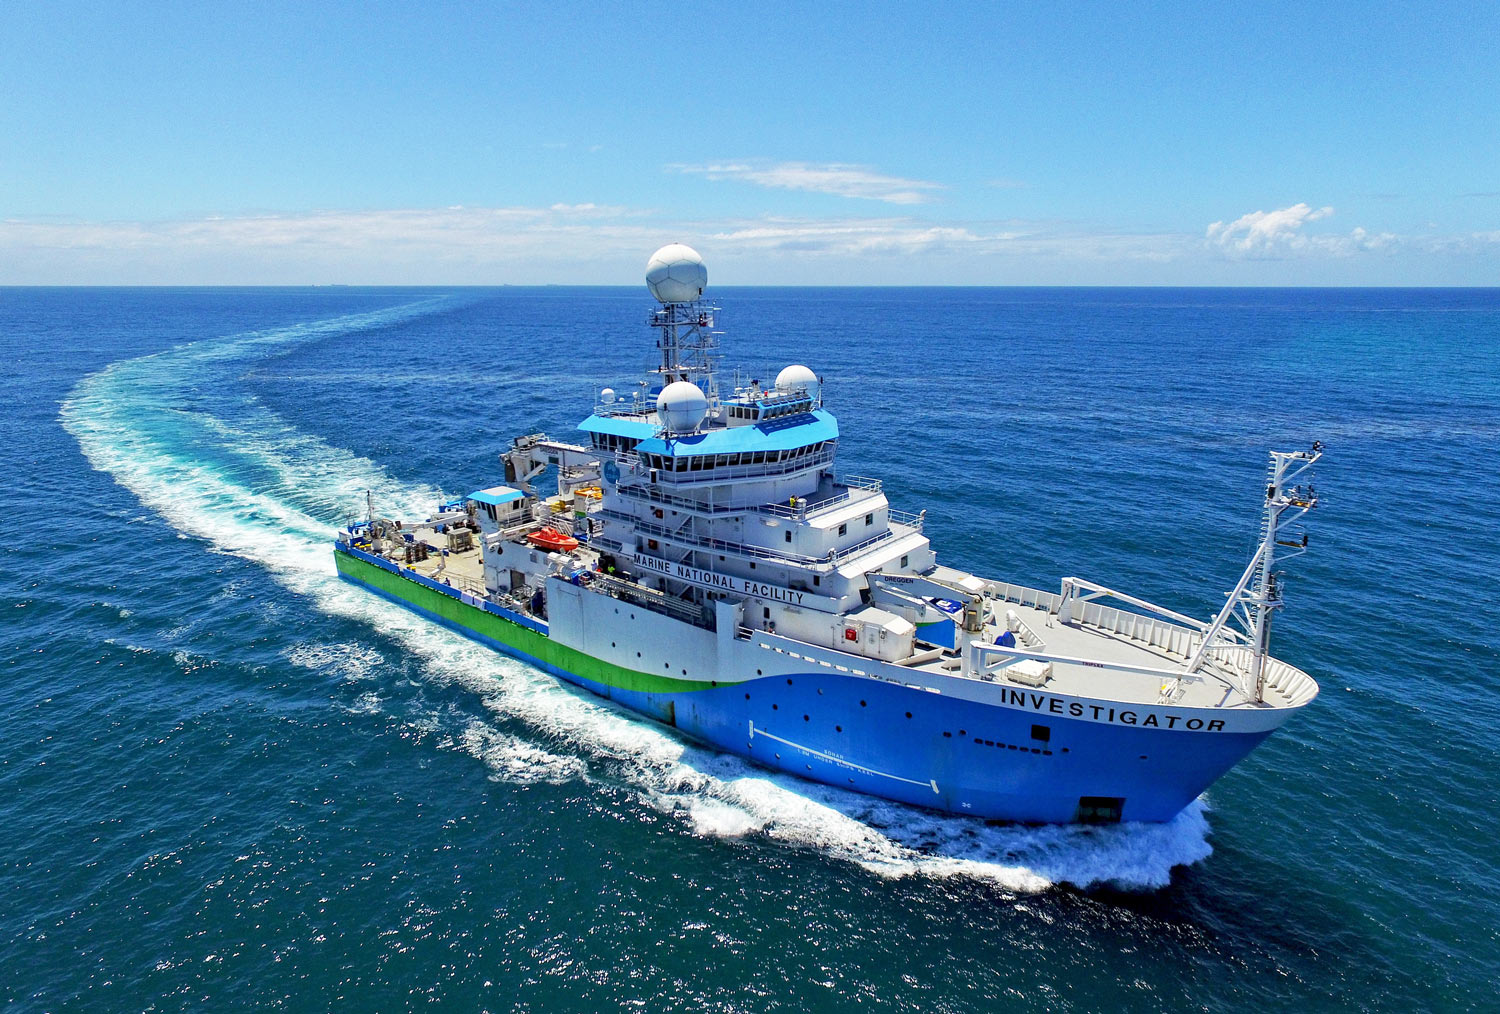 Research Vessel Investigator in open ocean